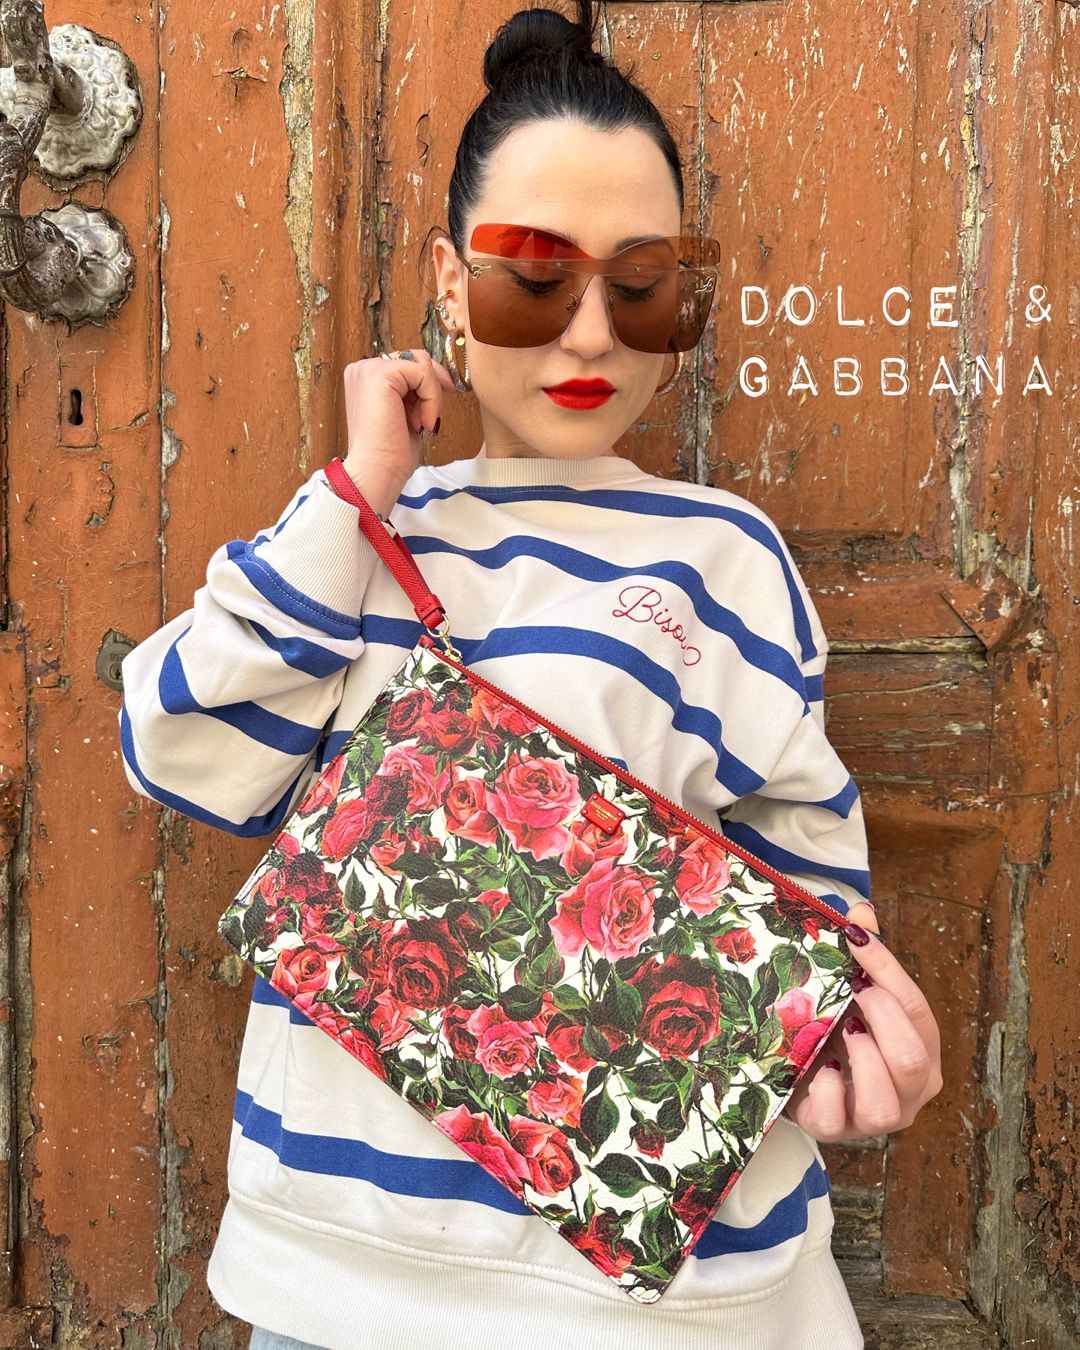 Pochette Dolce&Gabbana